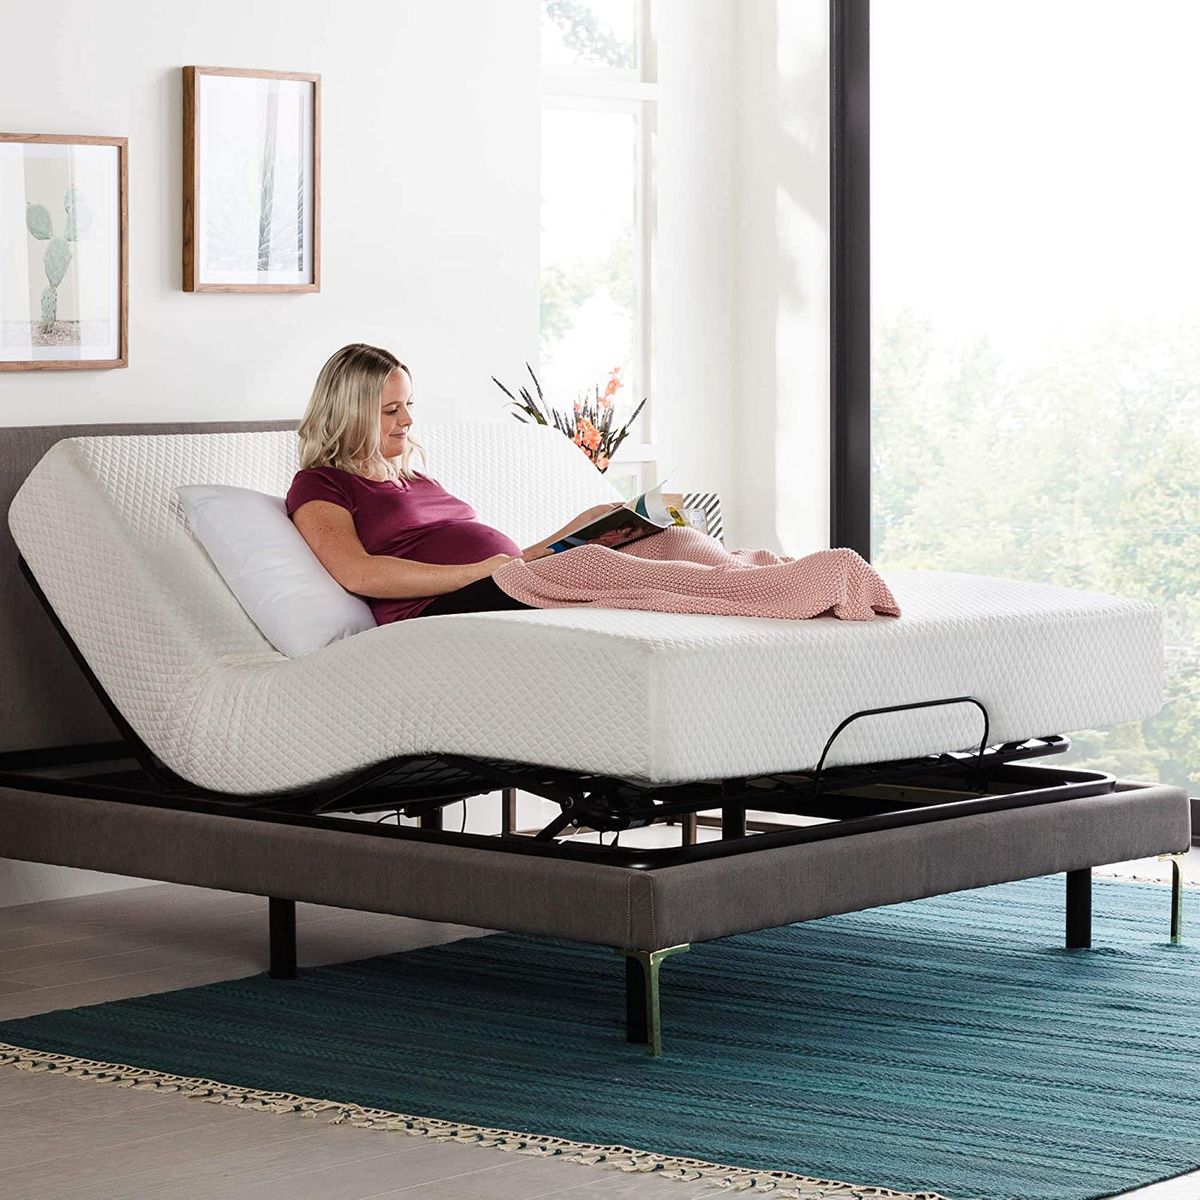 10 Best Adjustable Bed Bases 2021 The, King Size Power Adjustable Bed Frame